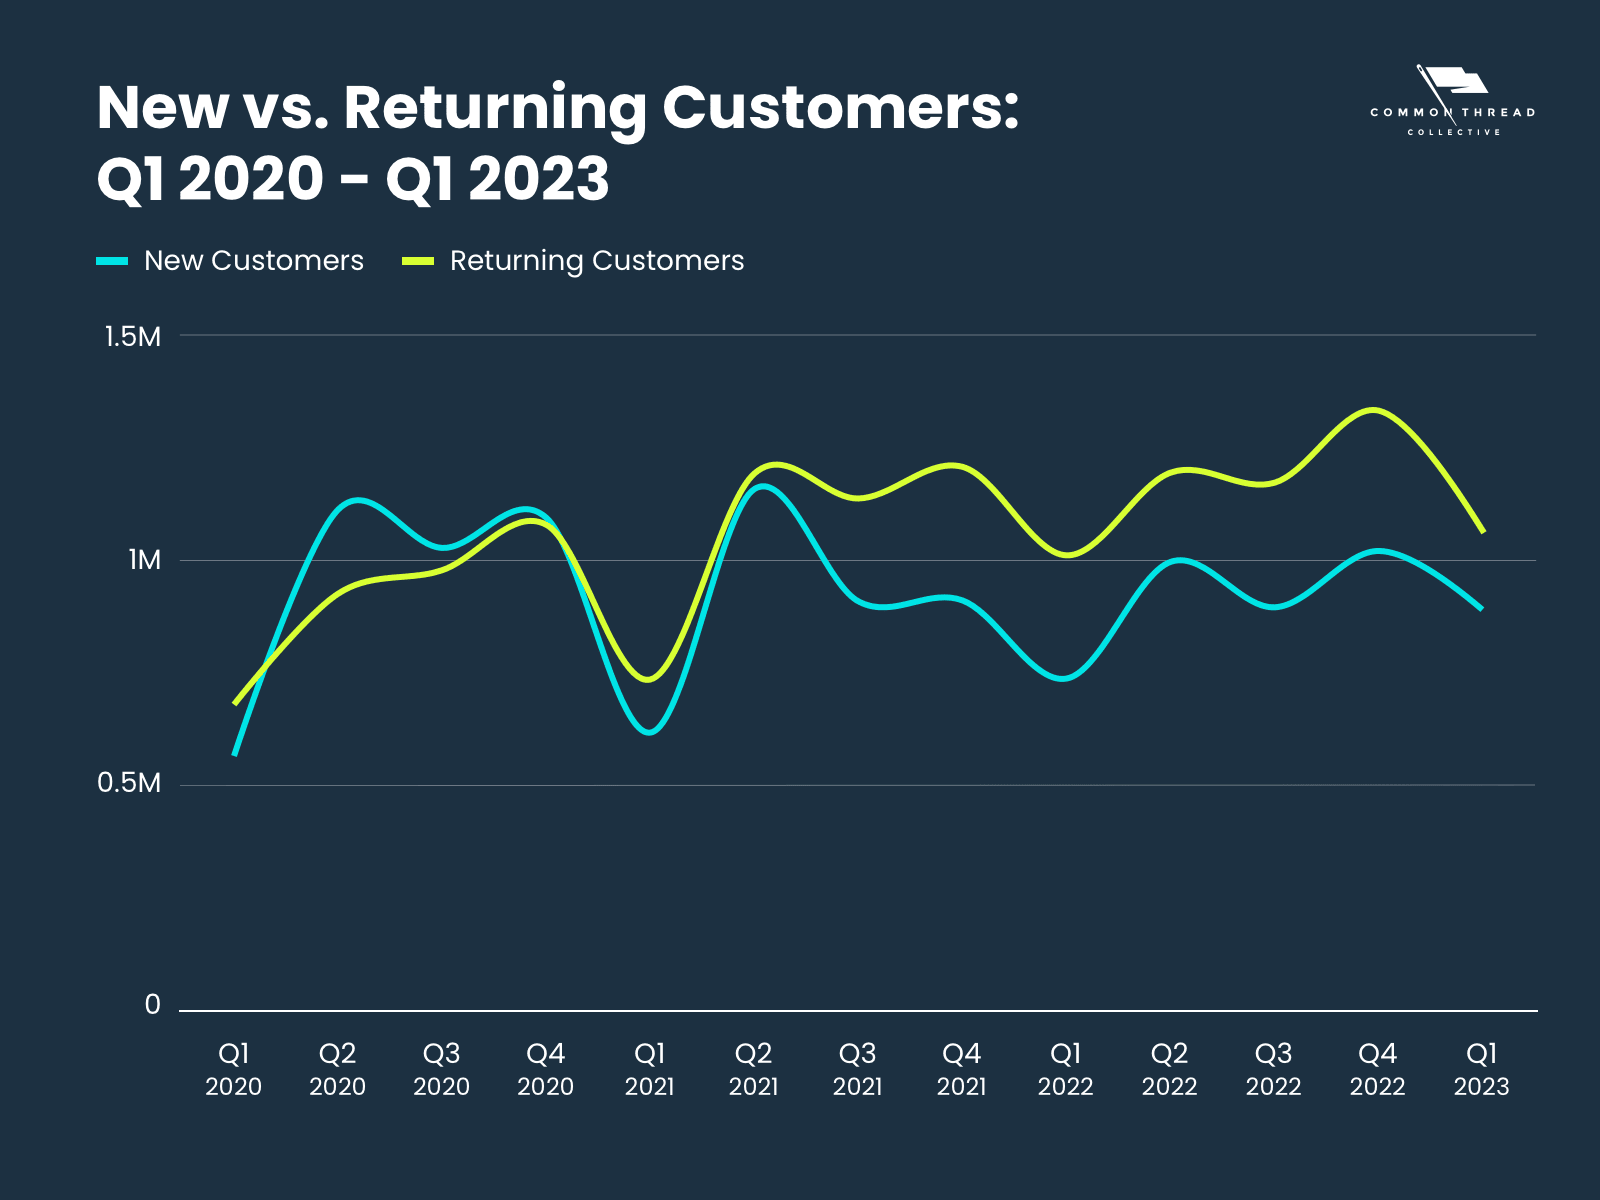 New vs. Returning Customers Q1 2020 - Q1 2023